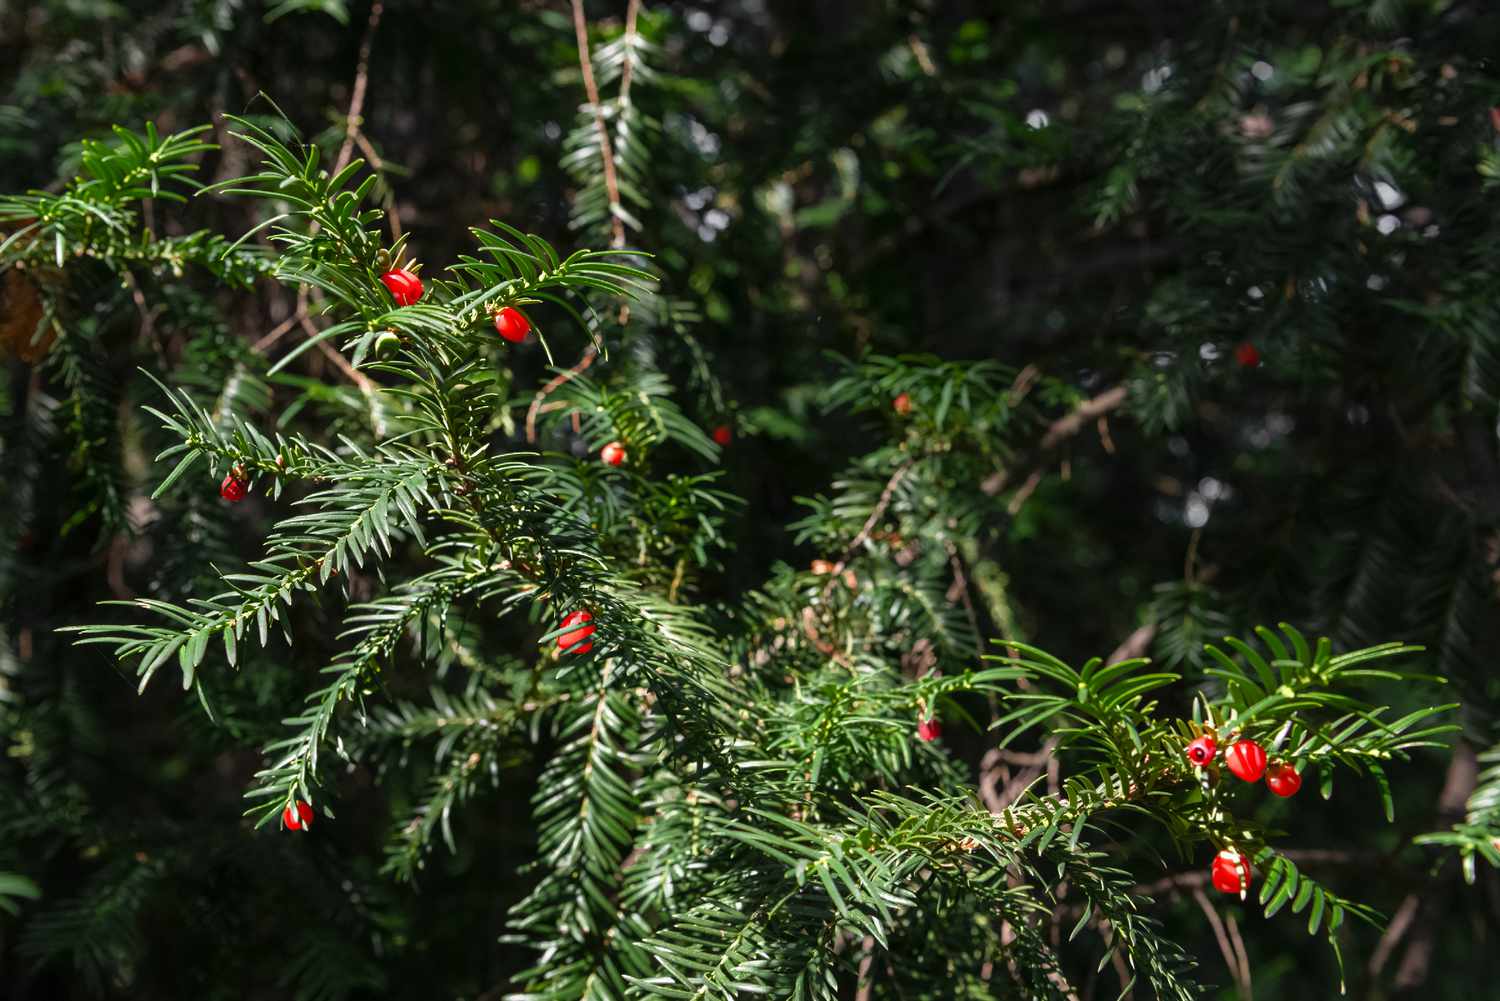 Japanischer Eibenzweig mit immergrünen Nadeln und roten Zierfrüchten im Sonnenlicht